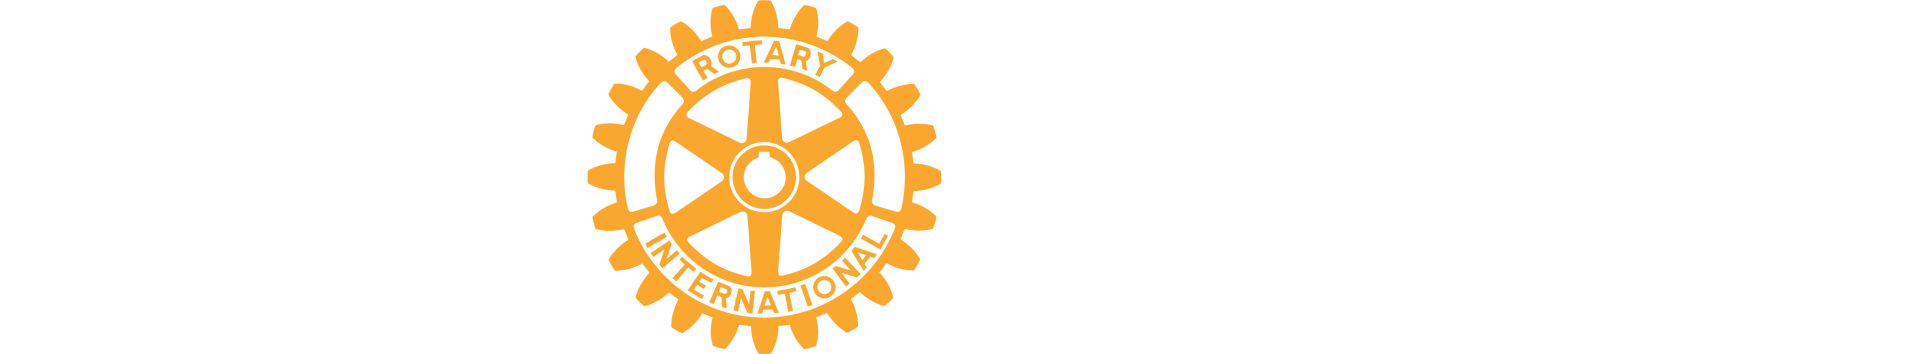 Rotary Club of Fenton